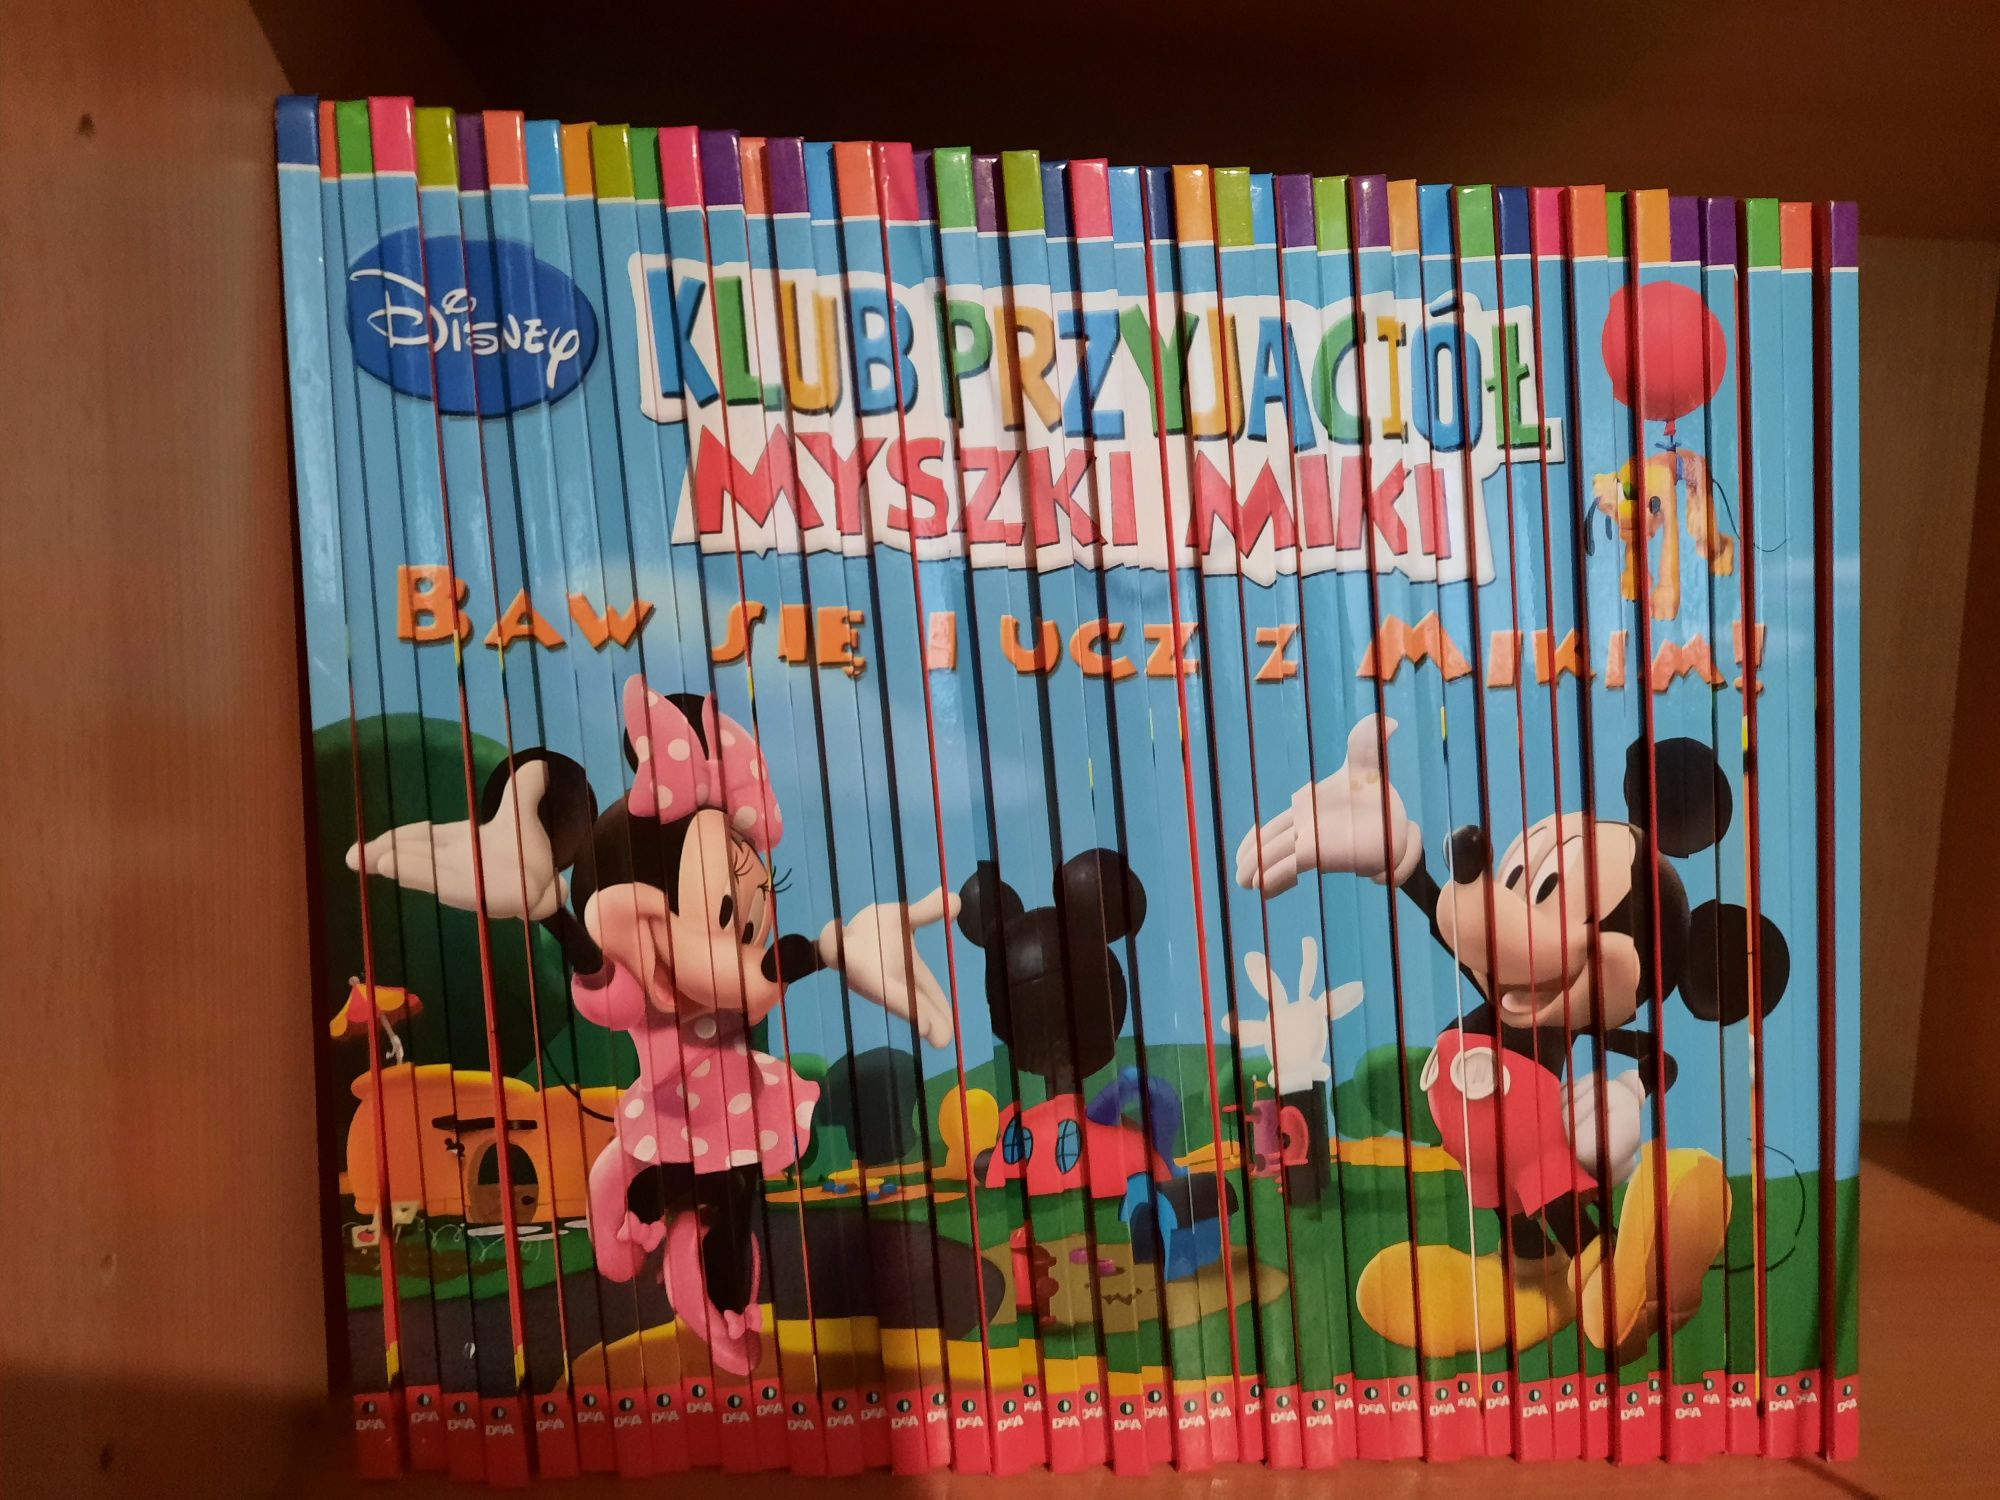 Mega zestaw Klub przyjaciół Myszki Miki. Baw się i ucz z Mikim. Disney